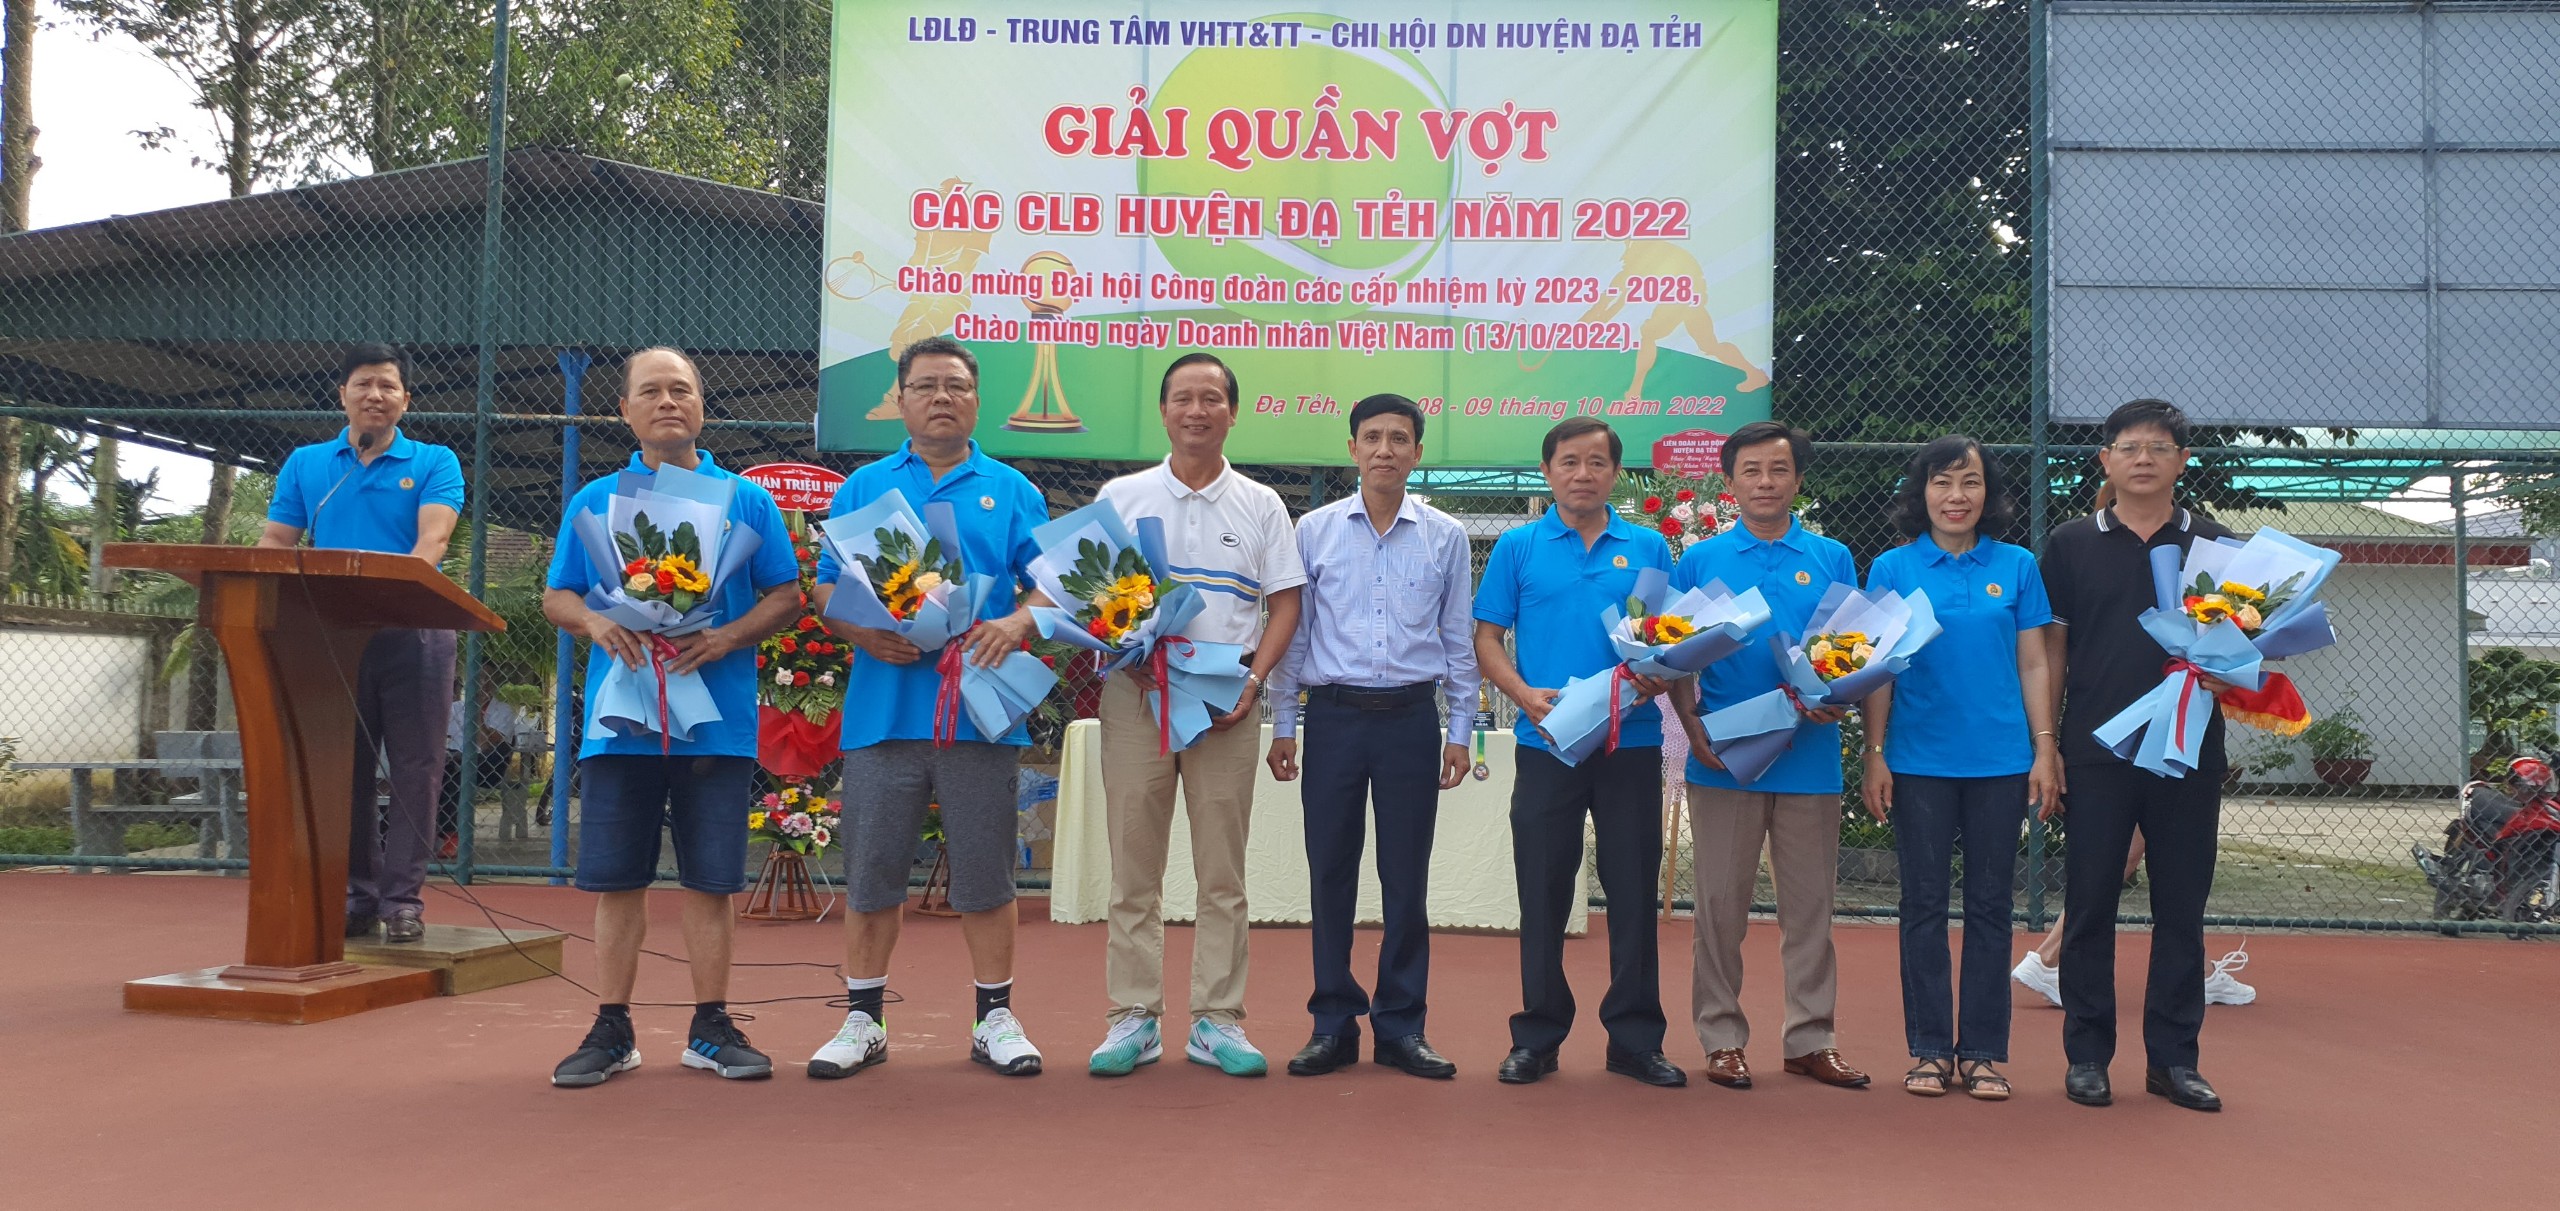 Đến năm 2024, quần vợt trở thành môn thể thao phổ biến tại Việt Nam. Mọi người đang yêu thích và tham gia vào môn thể thao này. Có nhiều giải đấu và sự kiện được tổ chức để thu hút sự quan tâm của những người yêu thích quần vợt cả trong và ngoài nước. Nếu bạn là một người yêu thích môn thể thao này, hãy xem các hình ảnh liên quan đến quần vợt để được trải nghiệm tuyệt vời hơn.